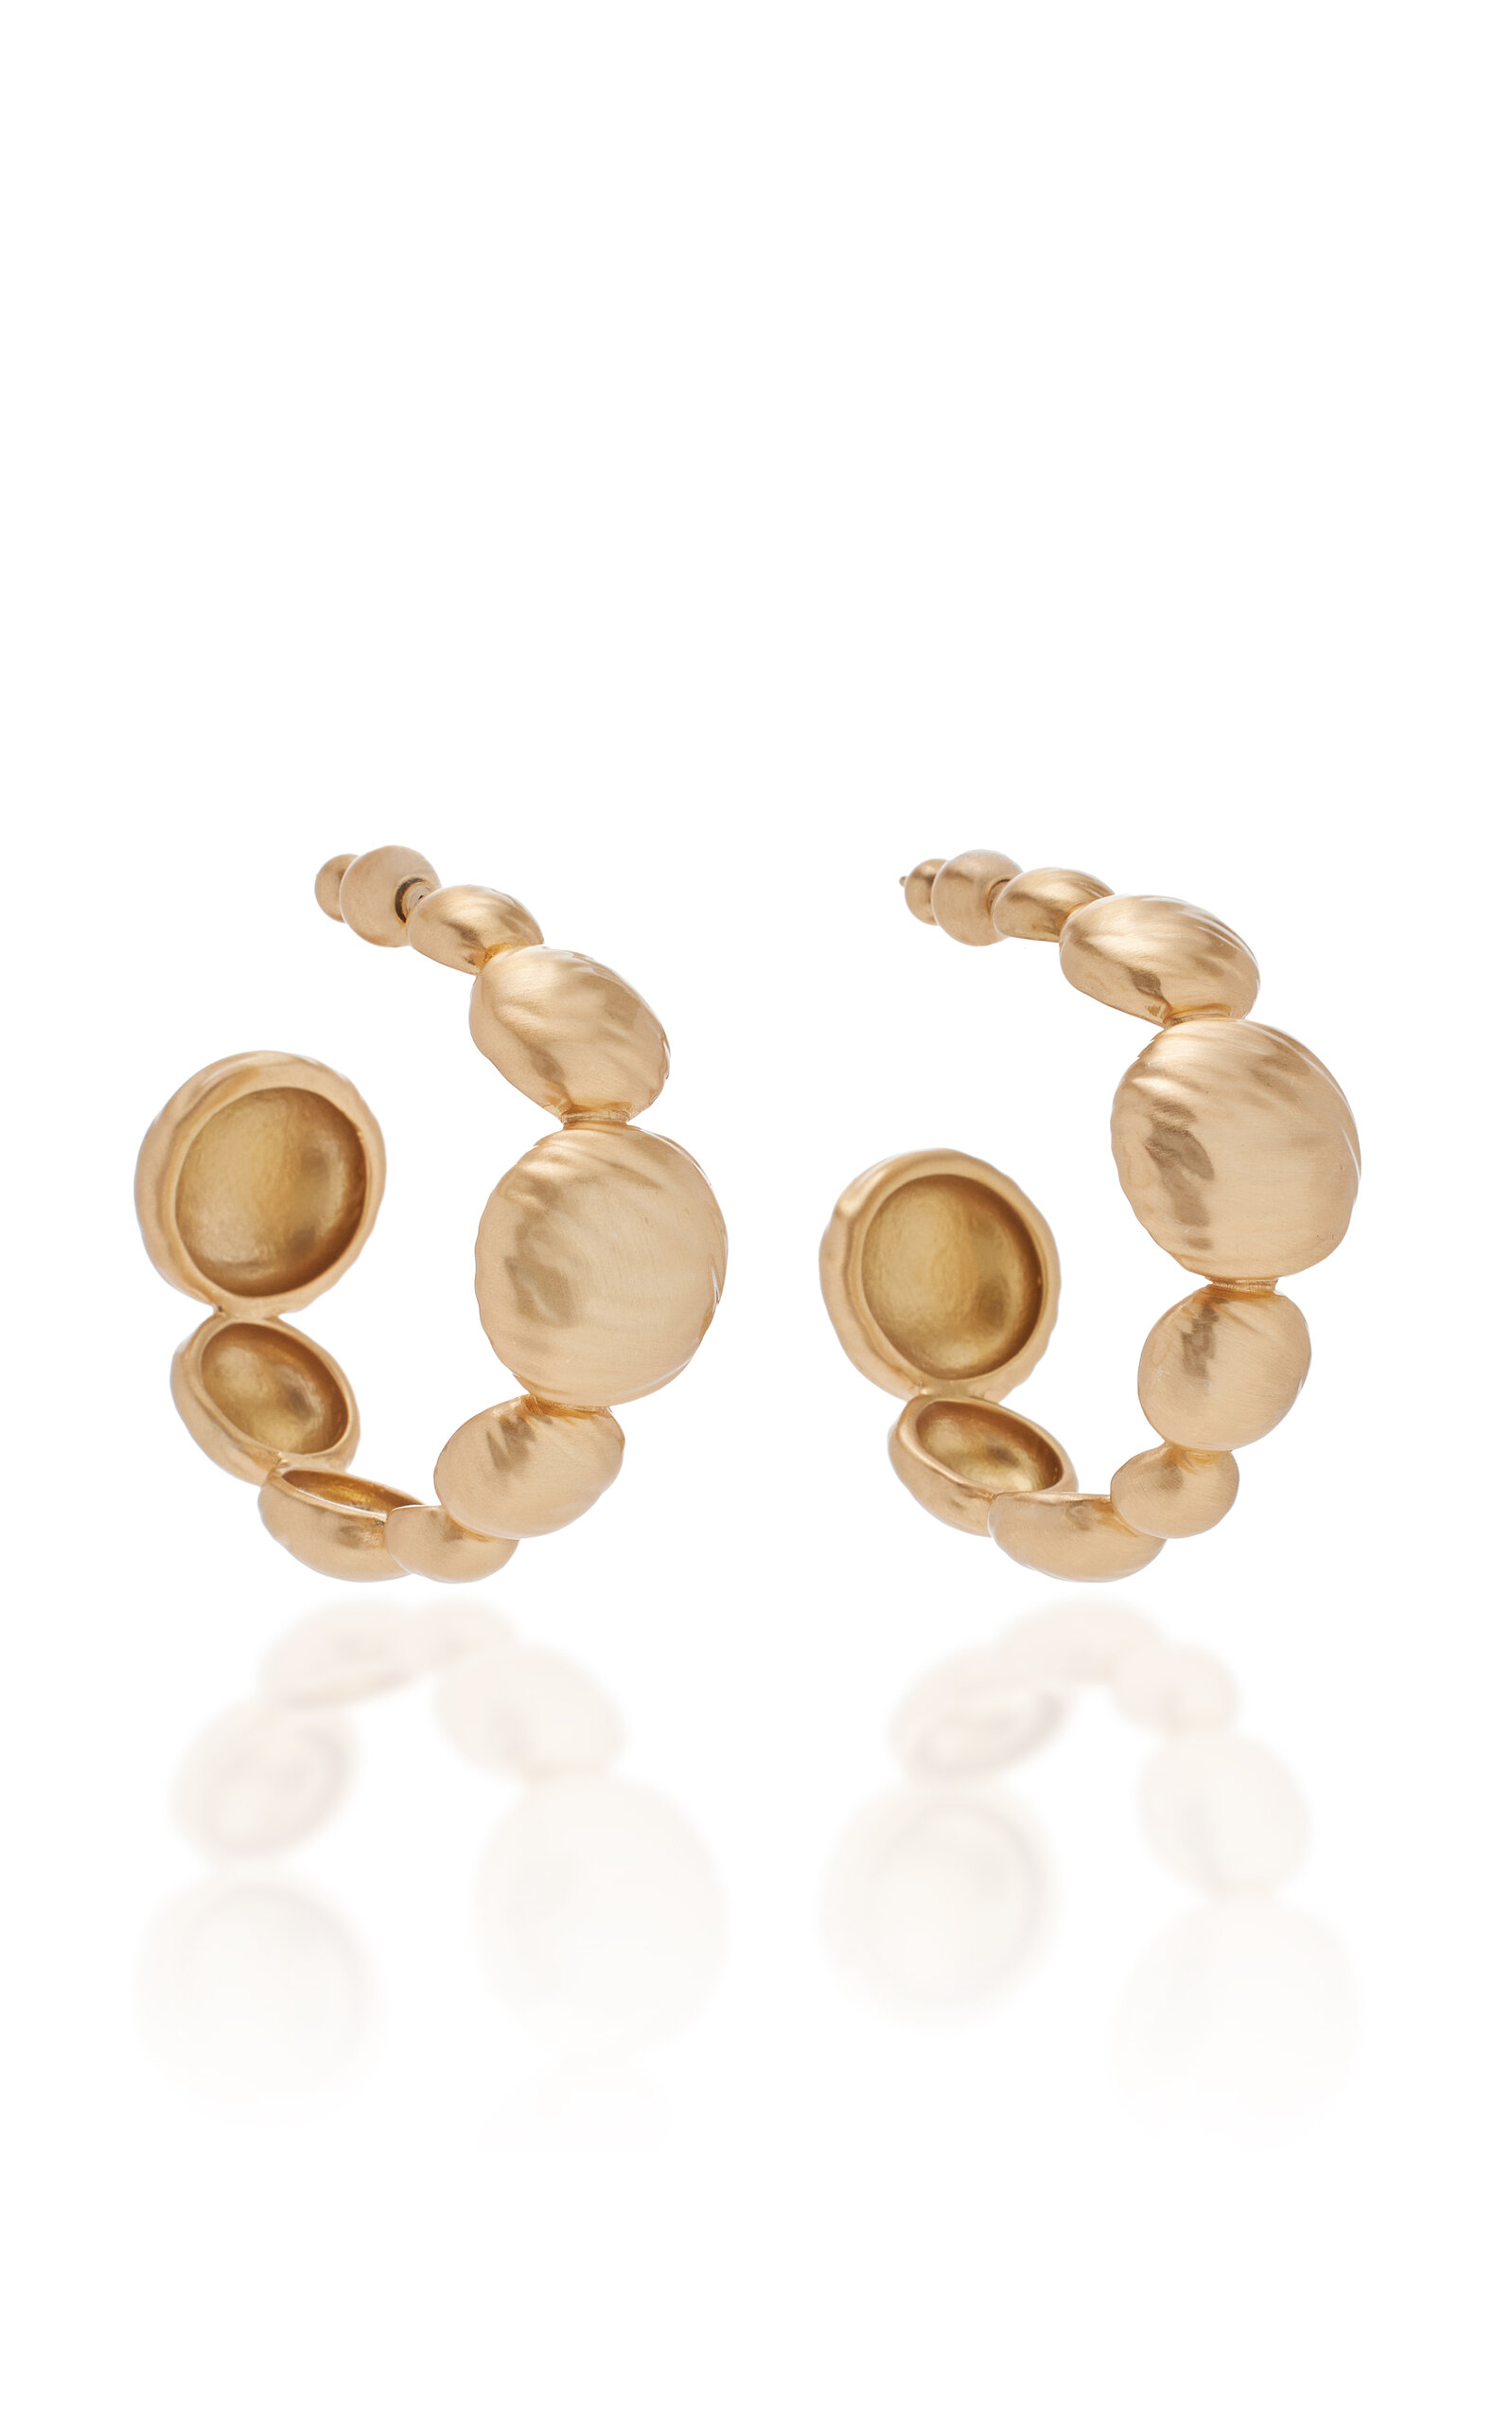 Cult Gaia - Women's Shirin Gold-Tone Hoop Earrings - Gold - OS - Moda Operandi - Gifts For Her